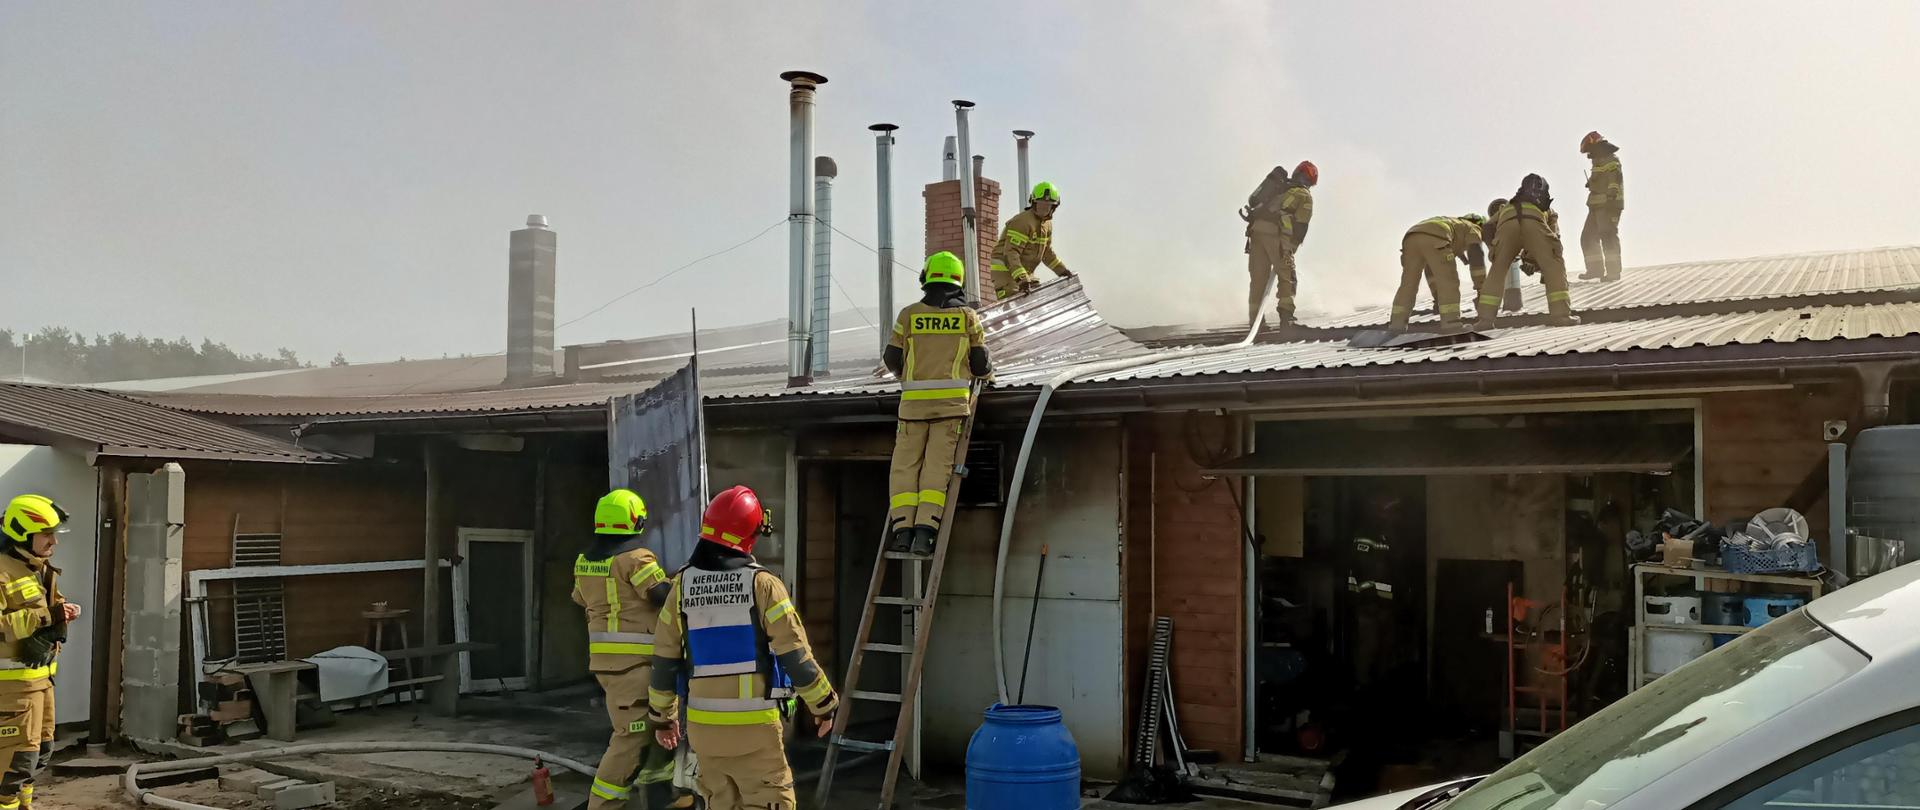 Strażacy podczas akcji ratowniczo-gaśniczej. 6 strażaków na dachu budynku, 1 na drabinie i 2 przy budynku.